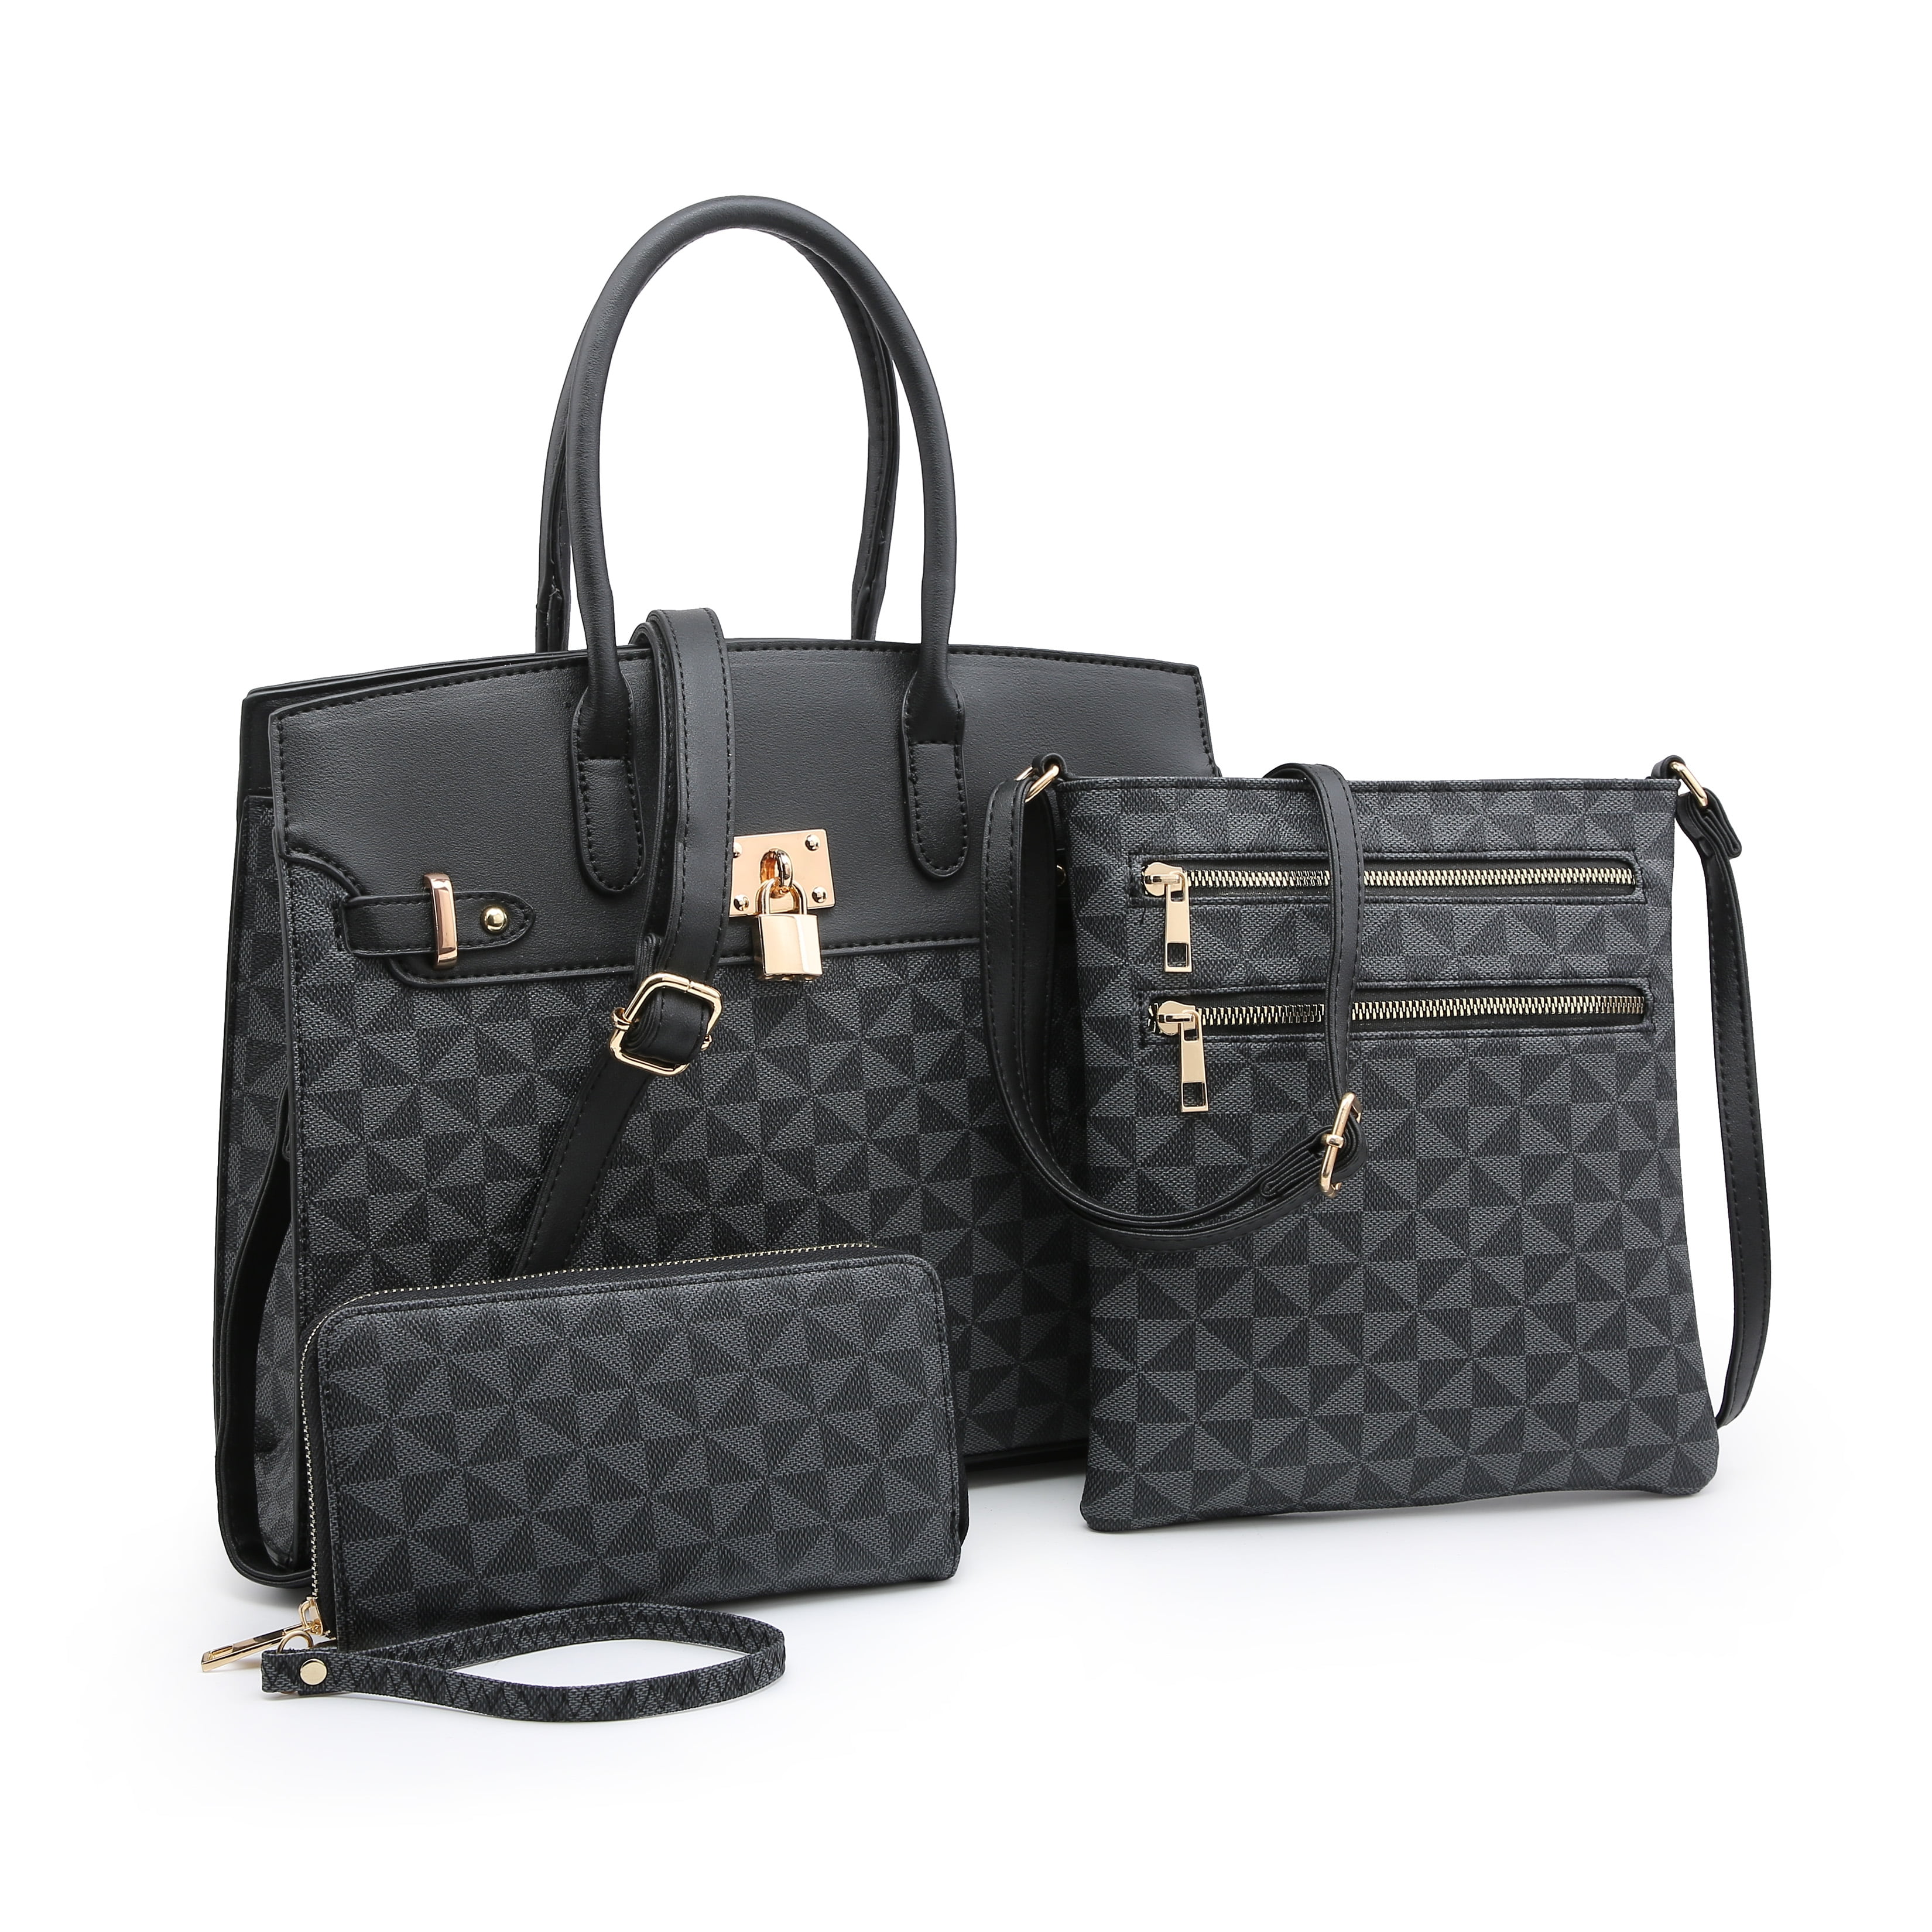 POPPY - 2020 New POPPY Handbags Set 3 in 1 Women&#39;s Top Handle Satchel Totes Handbag with Wallet ...